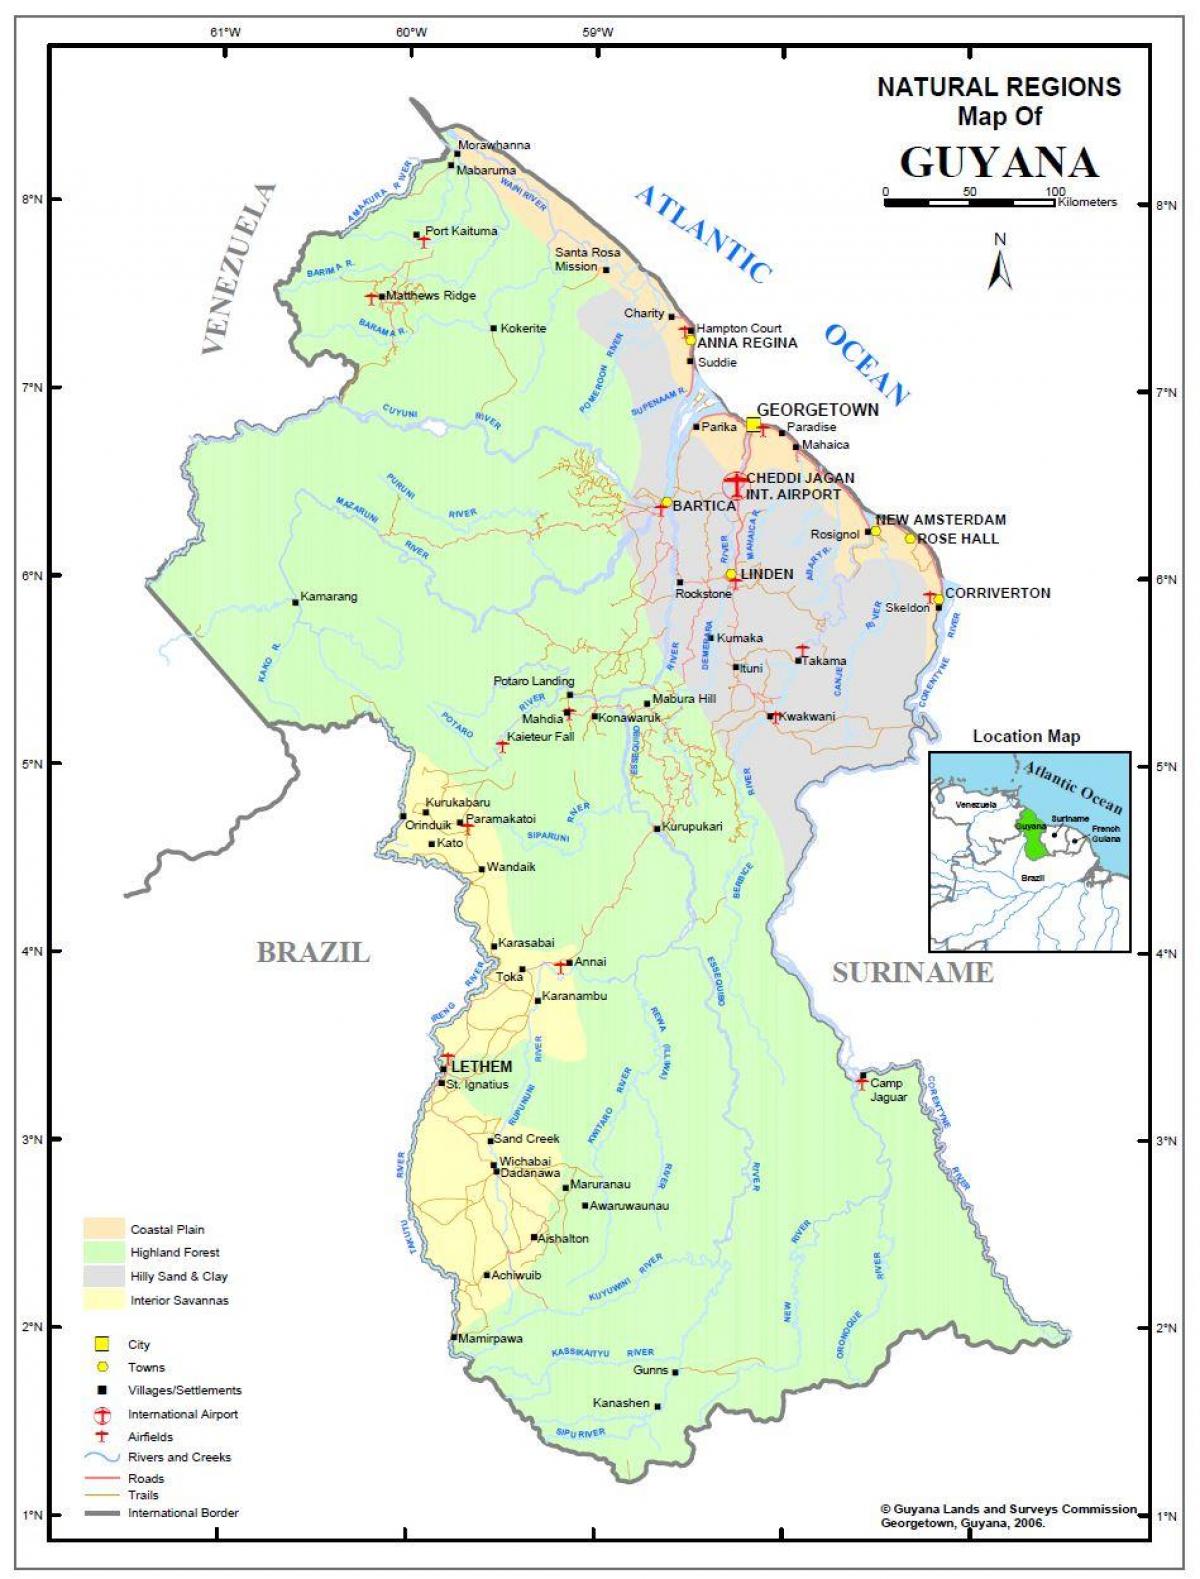 mapa da Guiana mostrando as 4 regiões naturais